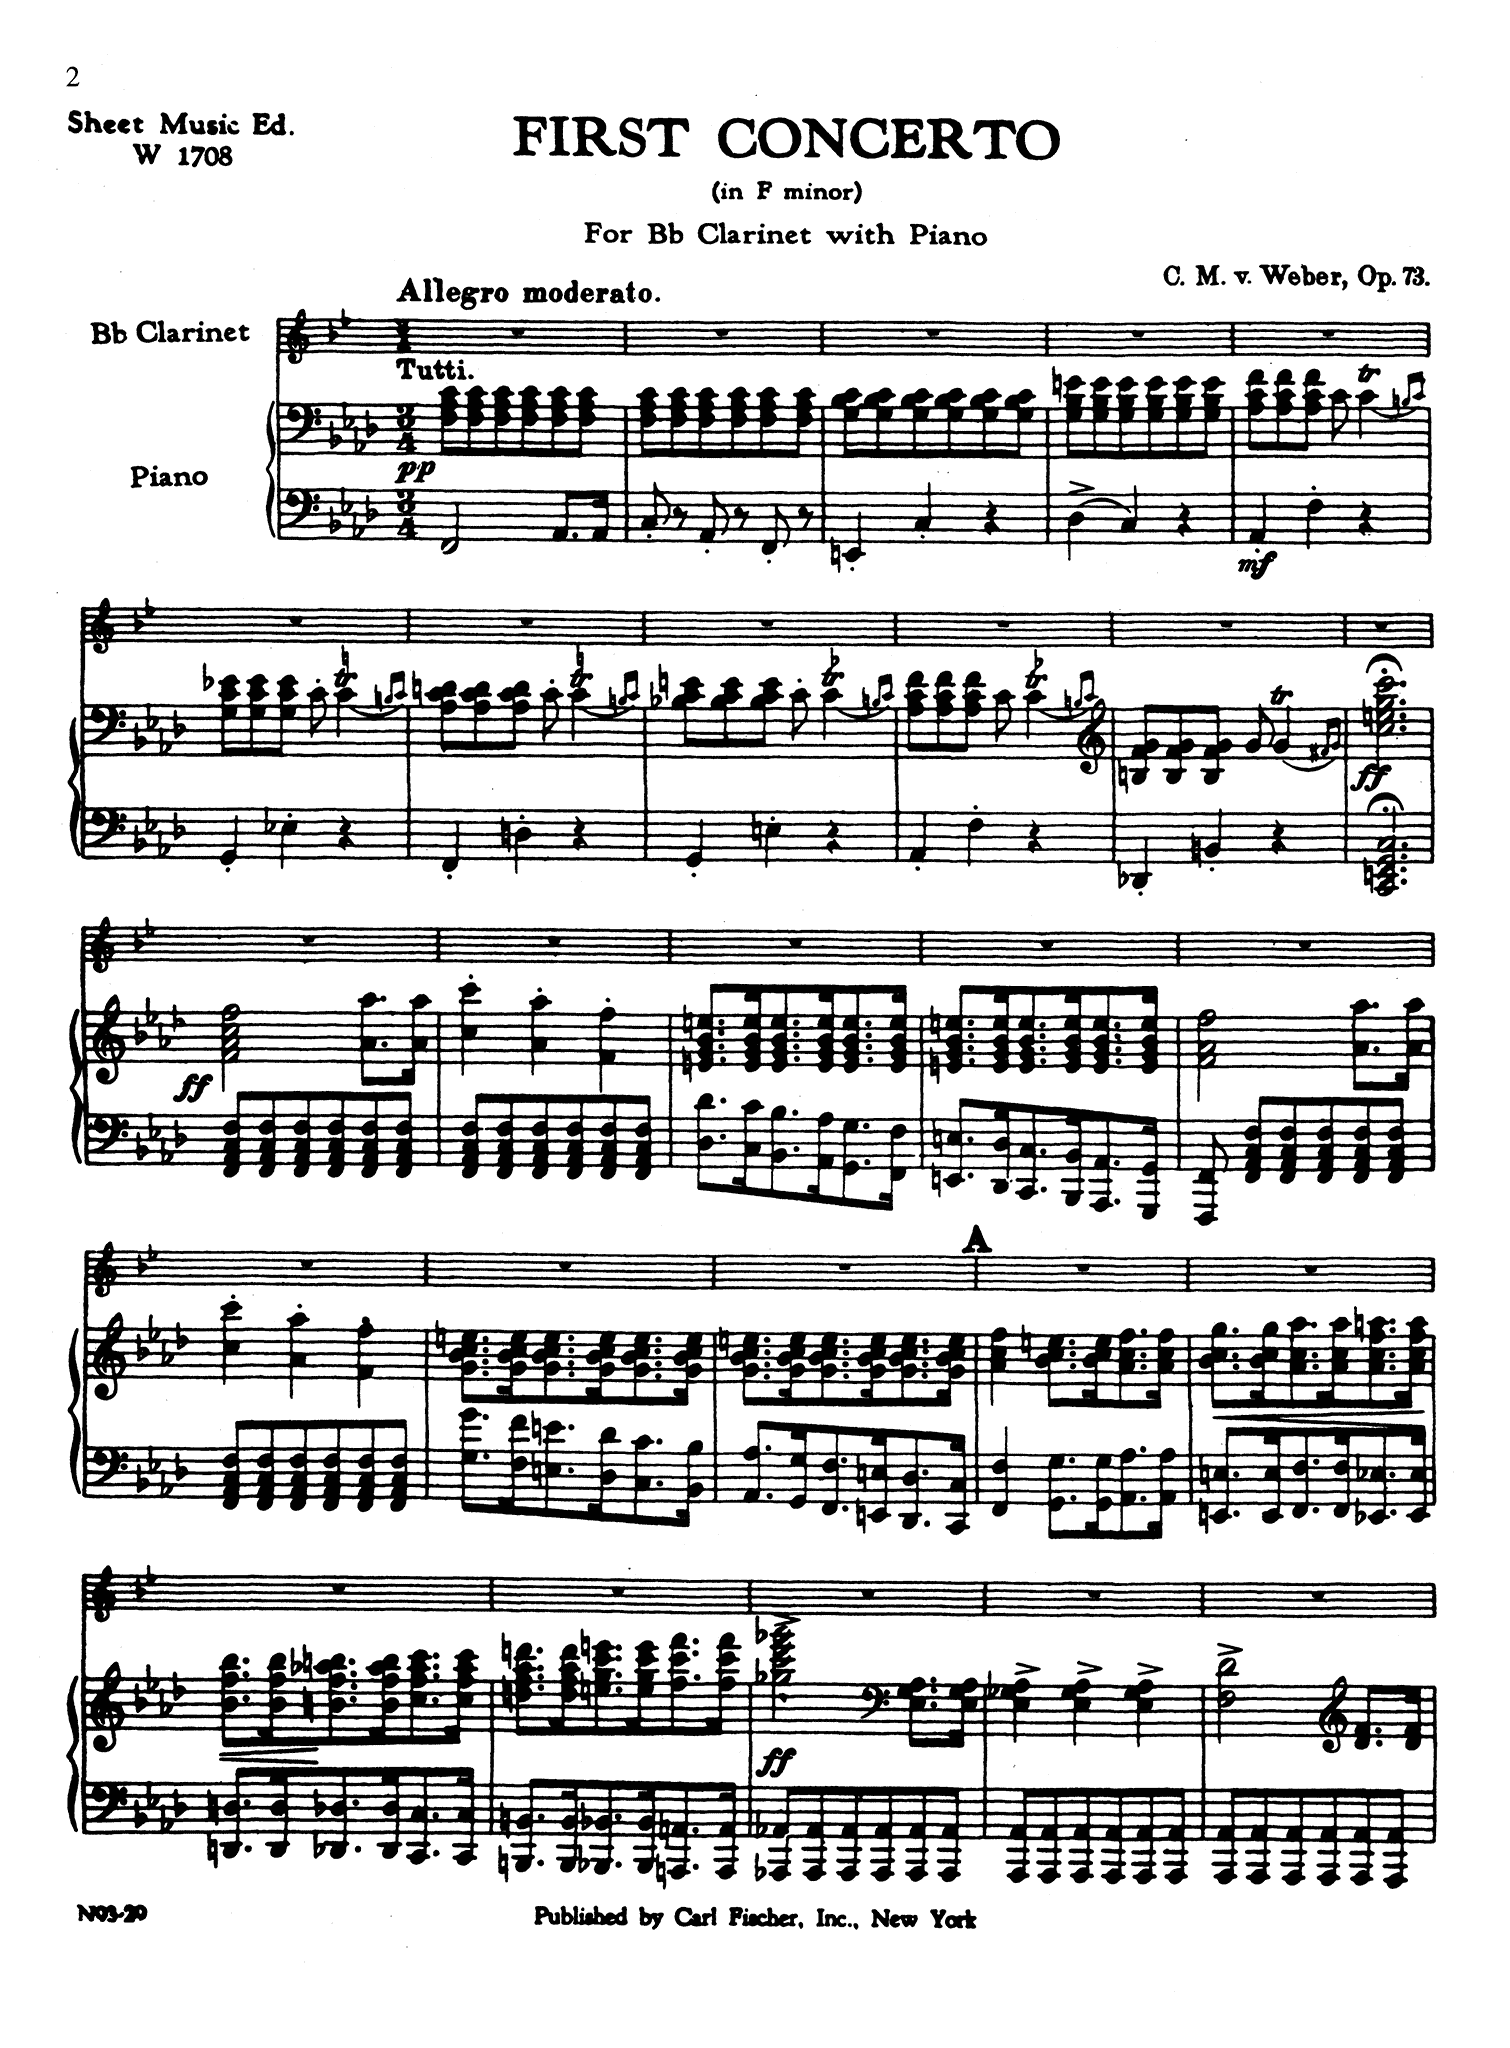 Clarinet Concerto No. 1, Op. 73 - Movement 1